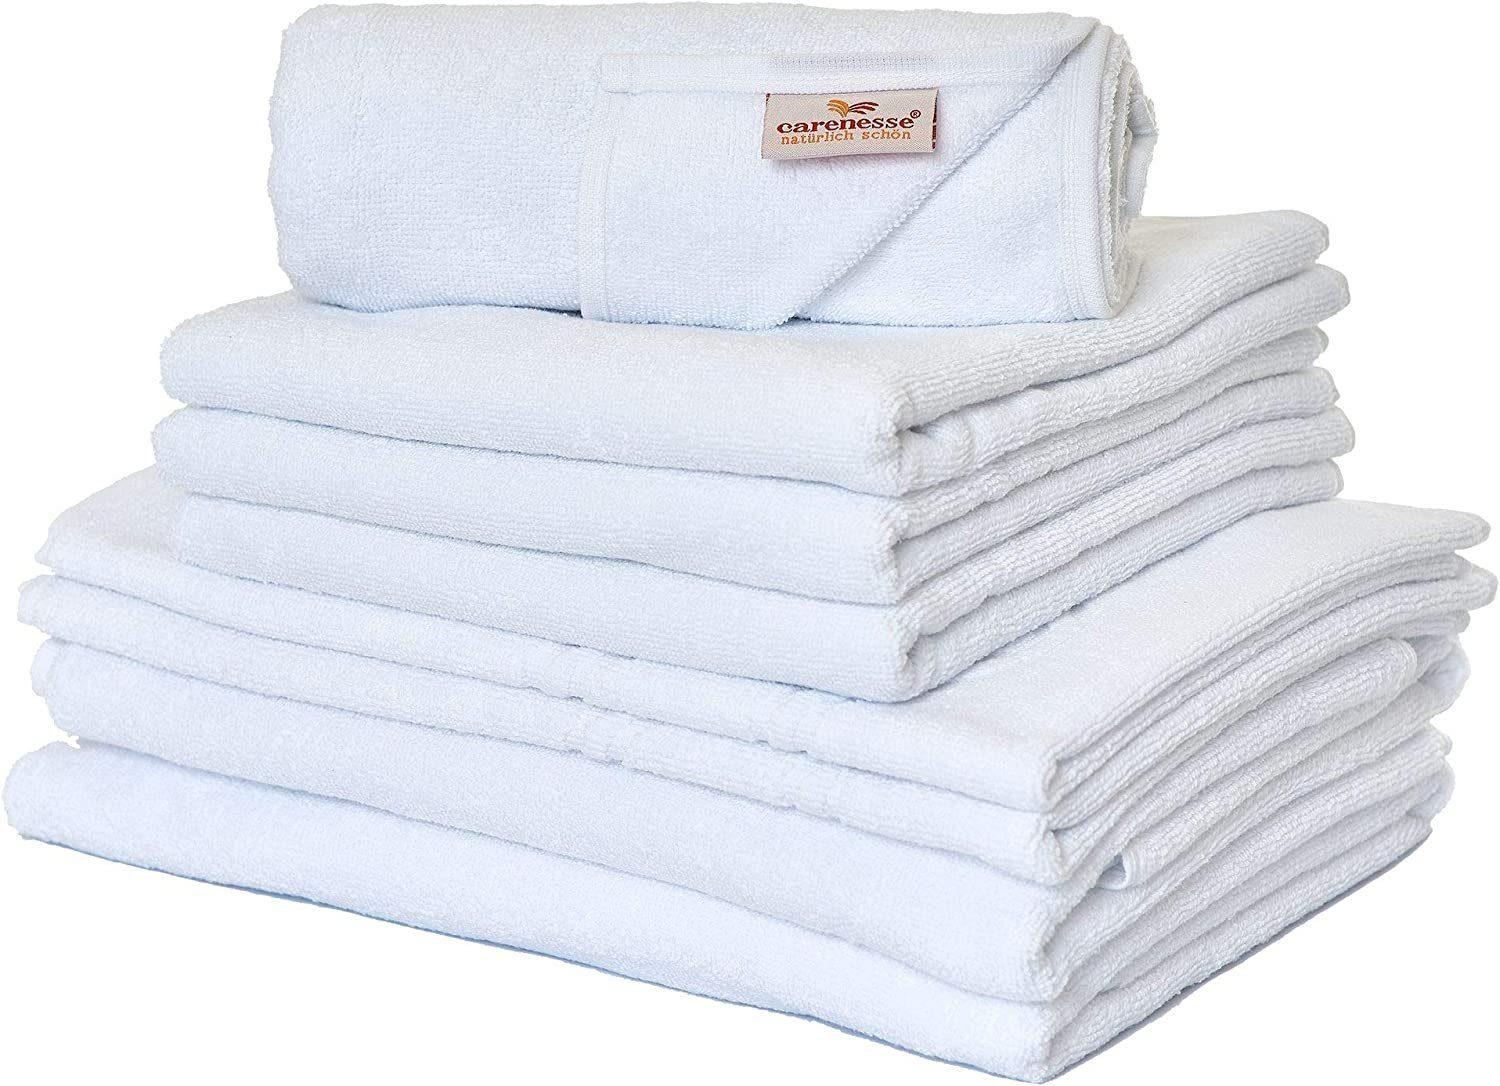 Carenesse Handtuch Set 4x Handtuch, 2x Duschtuch, 2x Badvorleger weiß, 8-tlg. 100% Baumwolle, Handtuch Set glatt & uni fusselfrei saugstark, Towel Frotteehandtuch | Handtuch-Sets